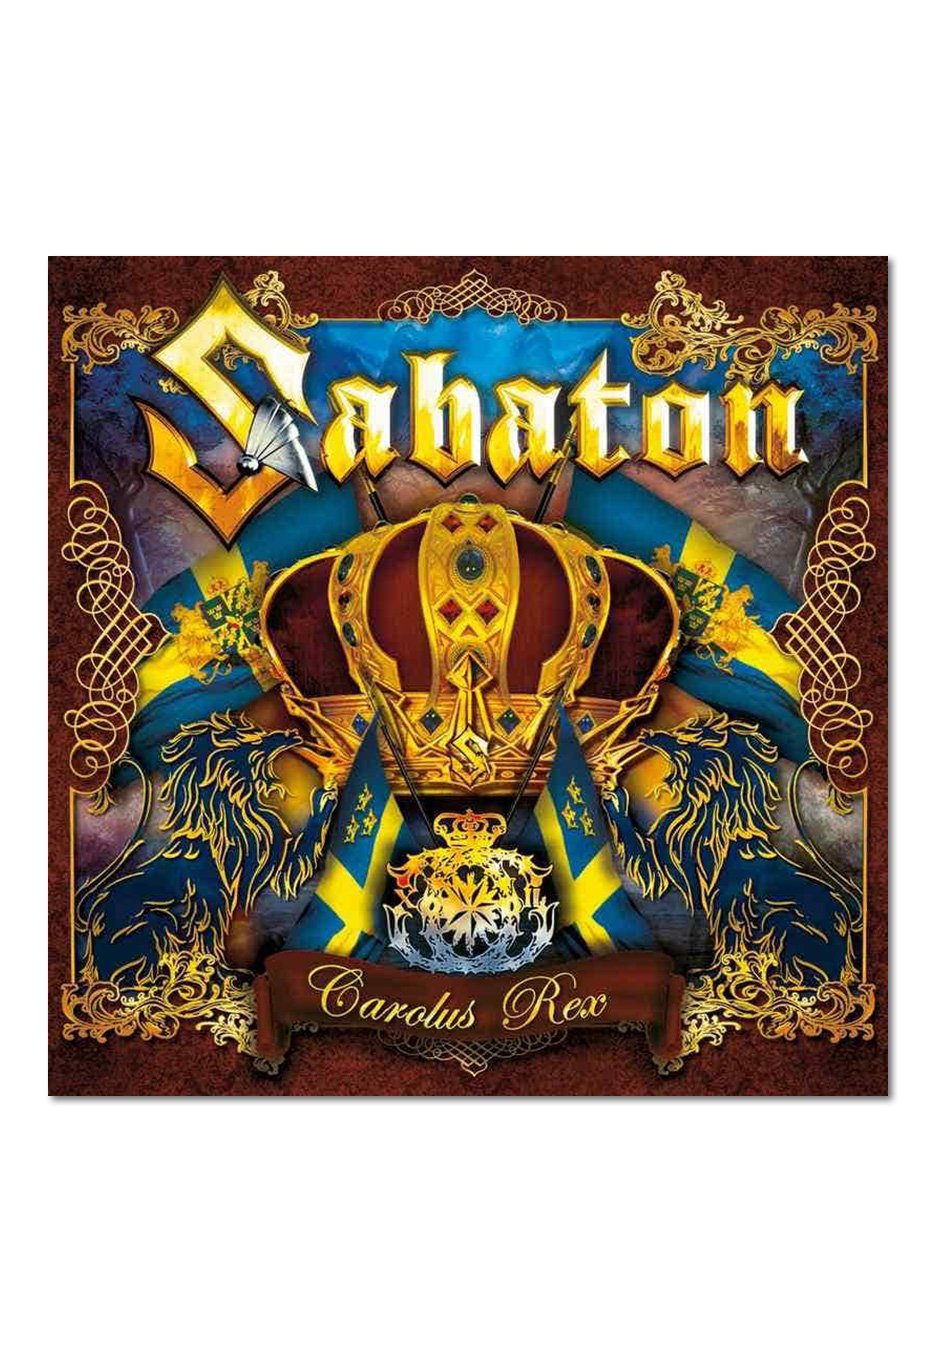 Sabaton - Carolus Rex (Swedish Version) - CD